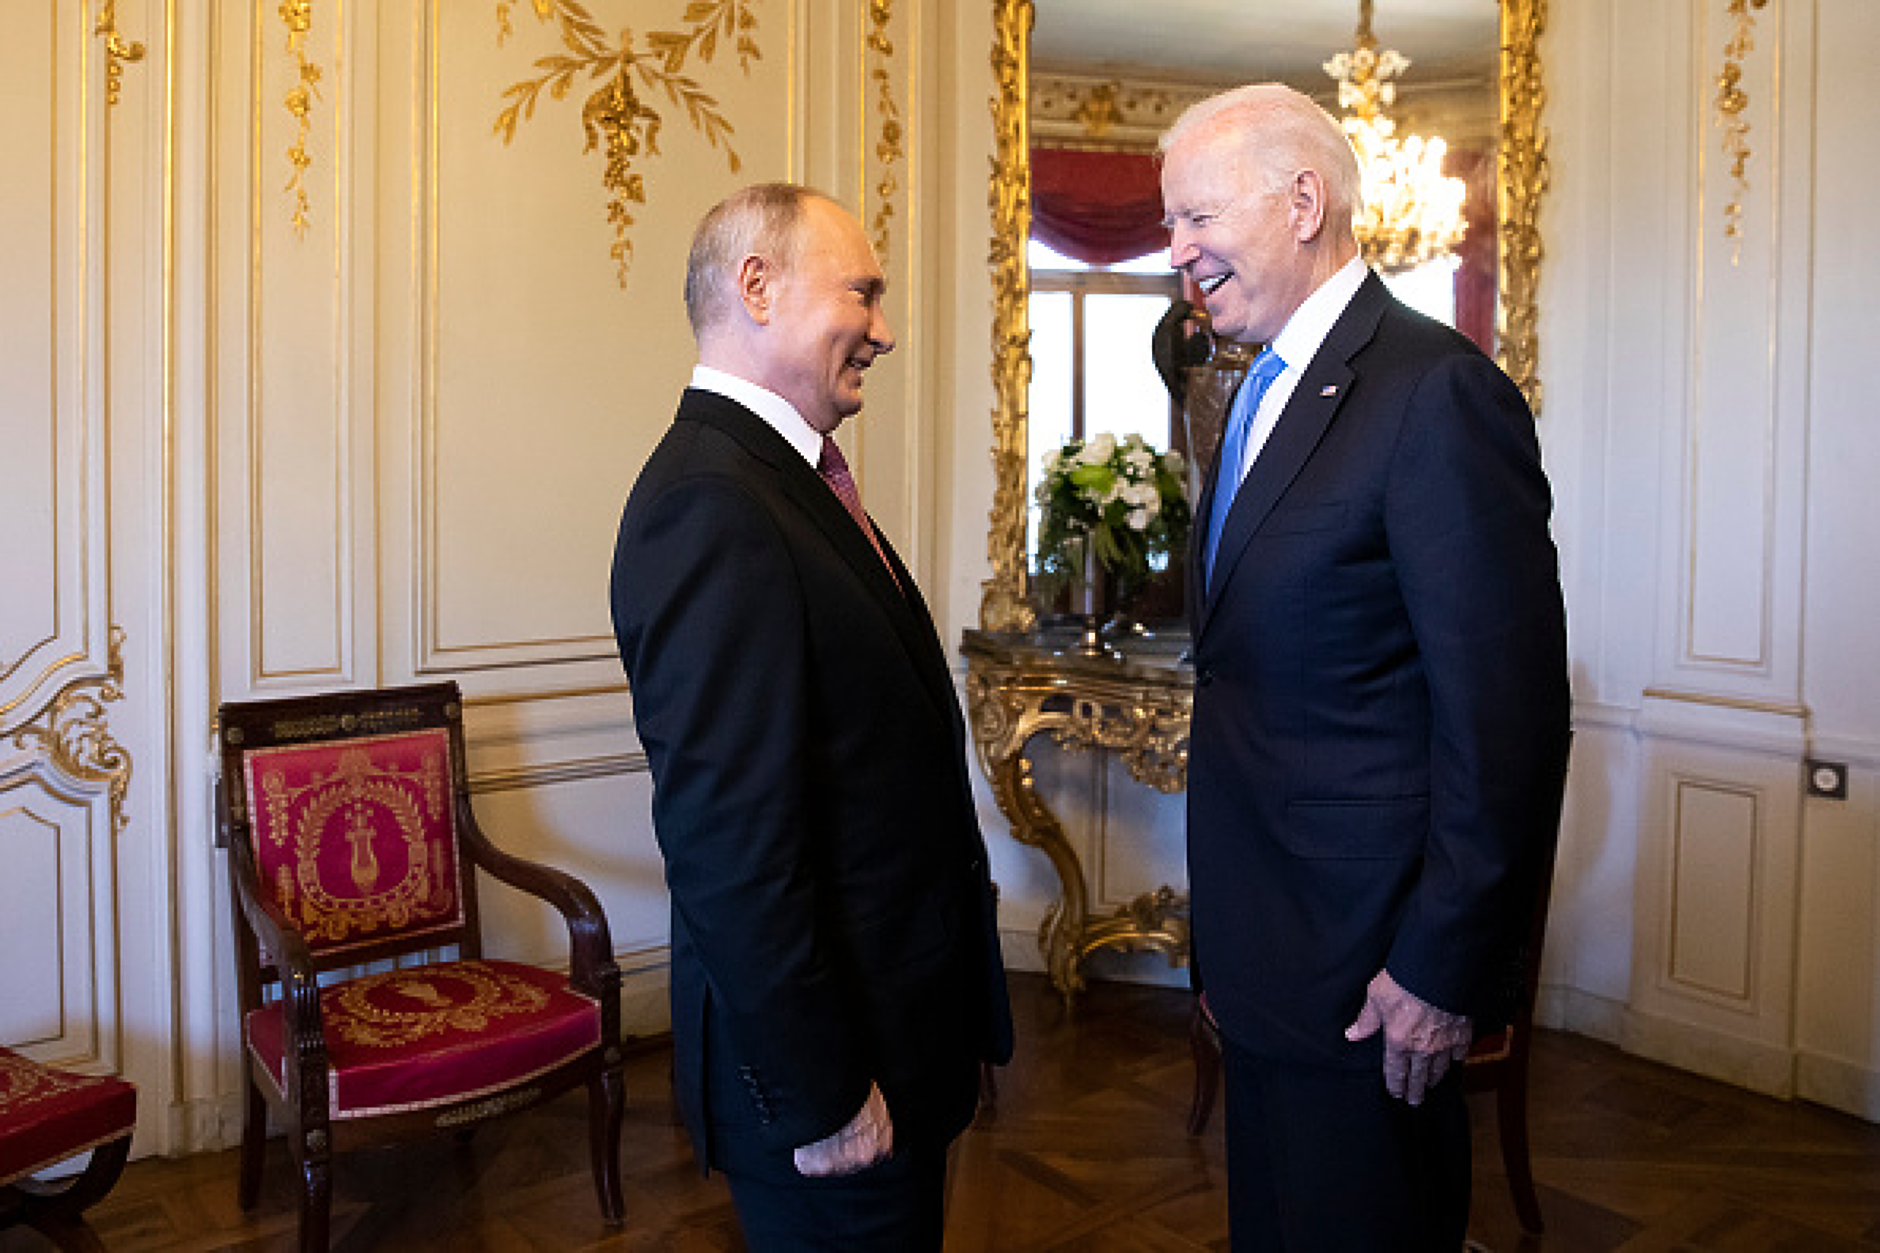 Байдън нарече Путин „луд кучи син“, Кремъл реагира остро на обидата